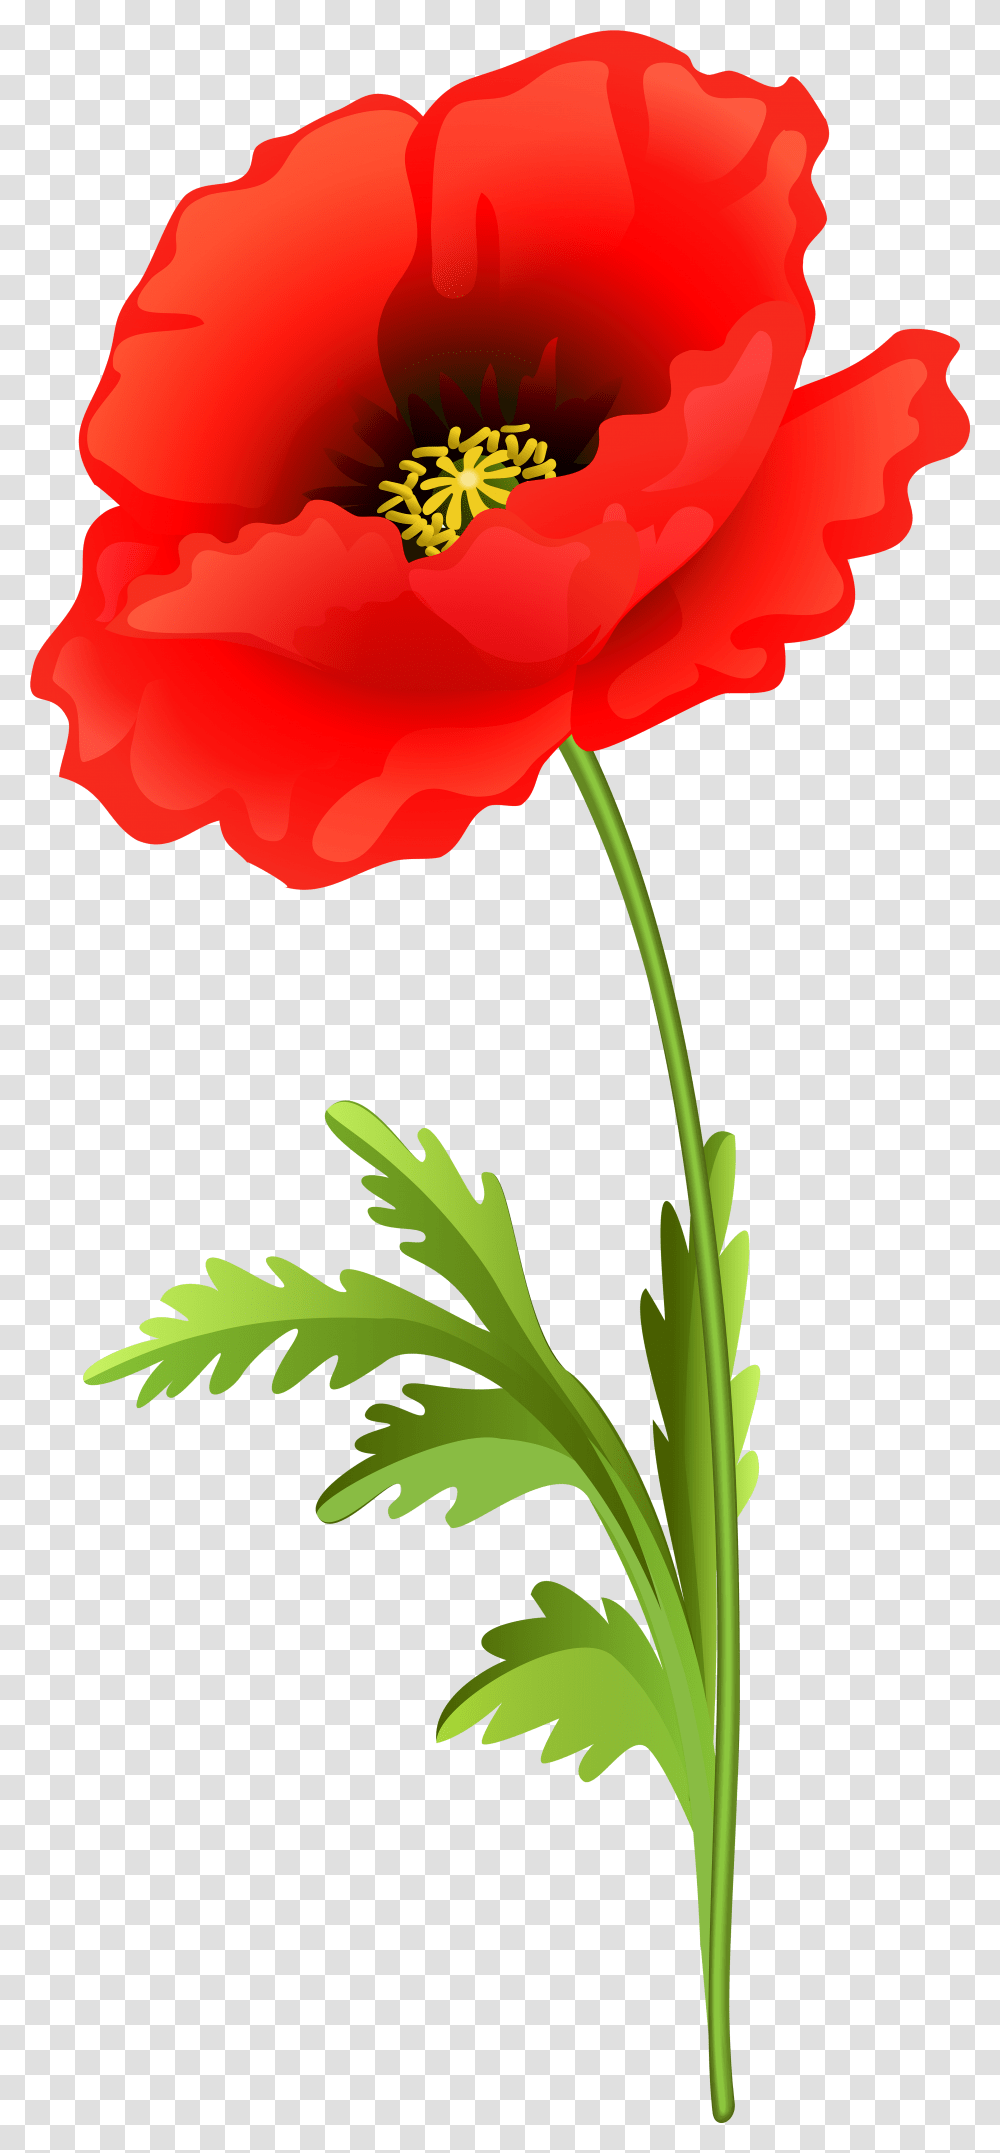 Poppy Flower Clip Art Image Poppy Flower Clipart, Plant, Blossom, Rose, Carnation Transparent Png